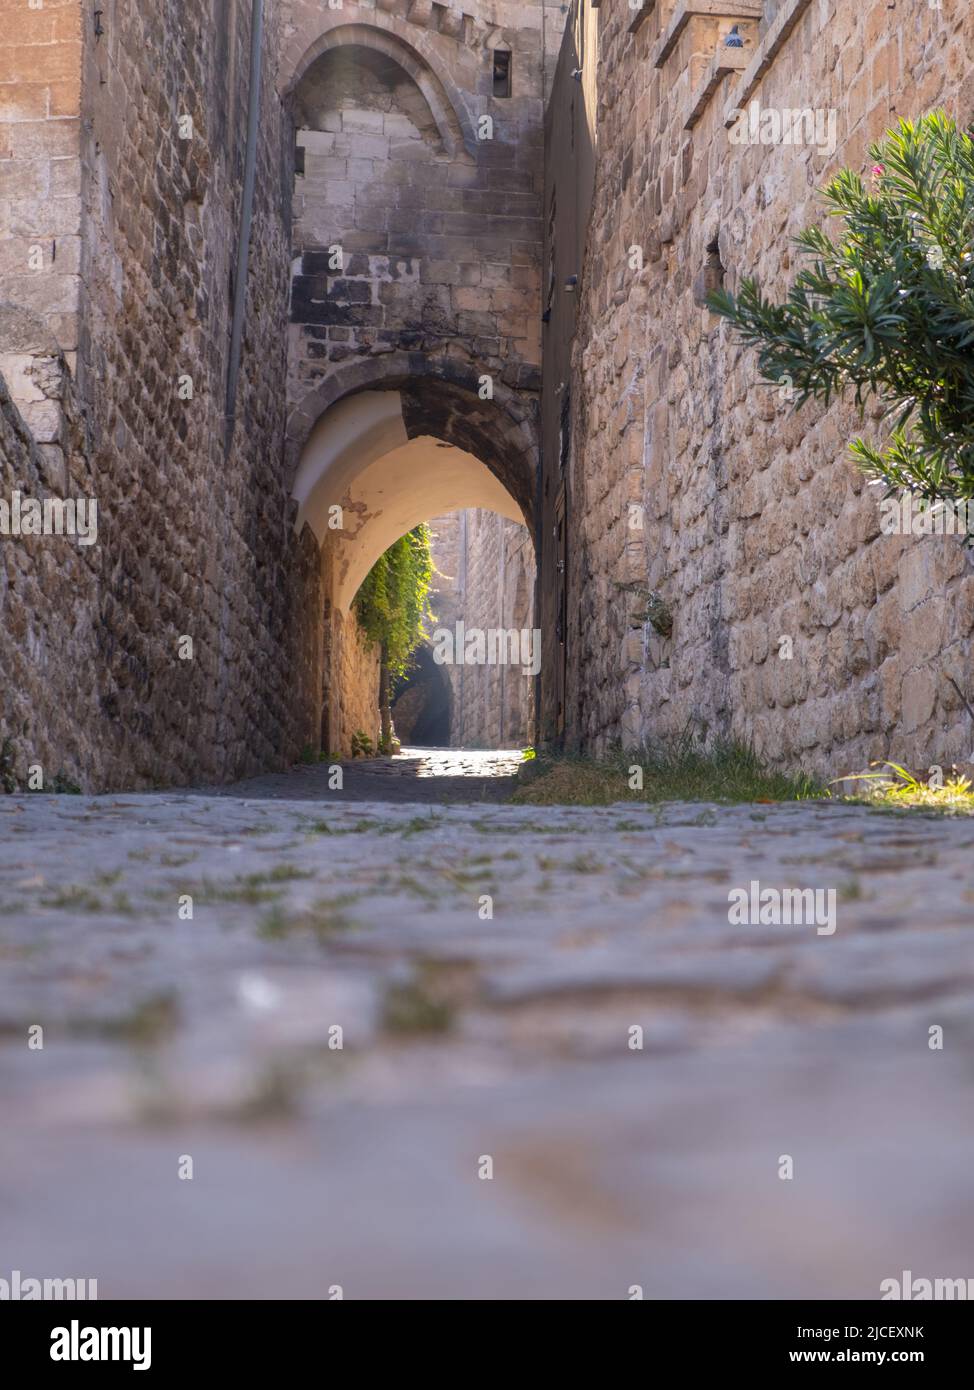 La città di Mardin nella Turchia orientale, una città medievale famosa per la sua disposizione a gradini e le tortuose strade a tunnel Foto Stock